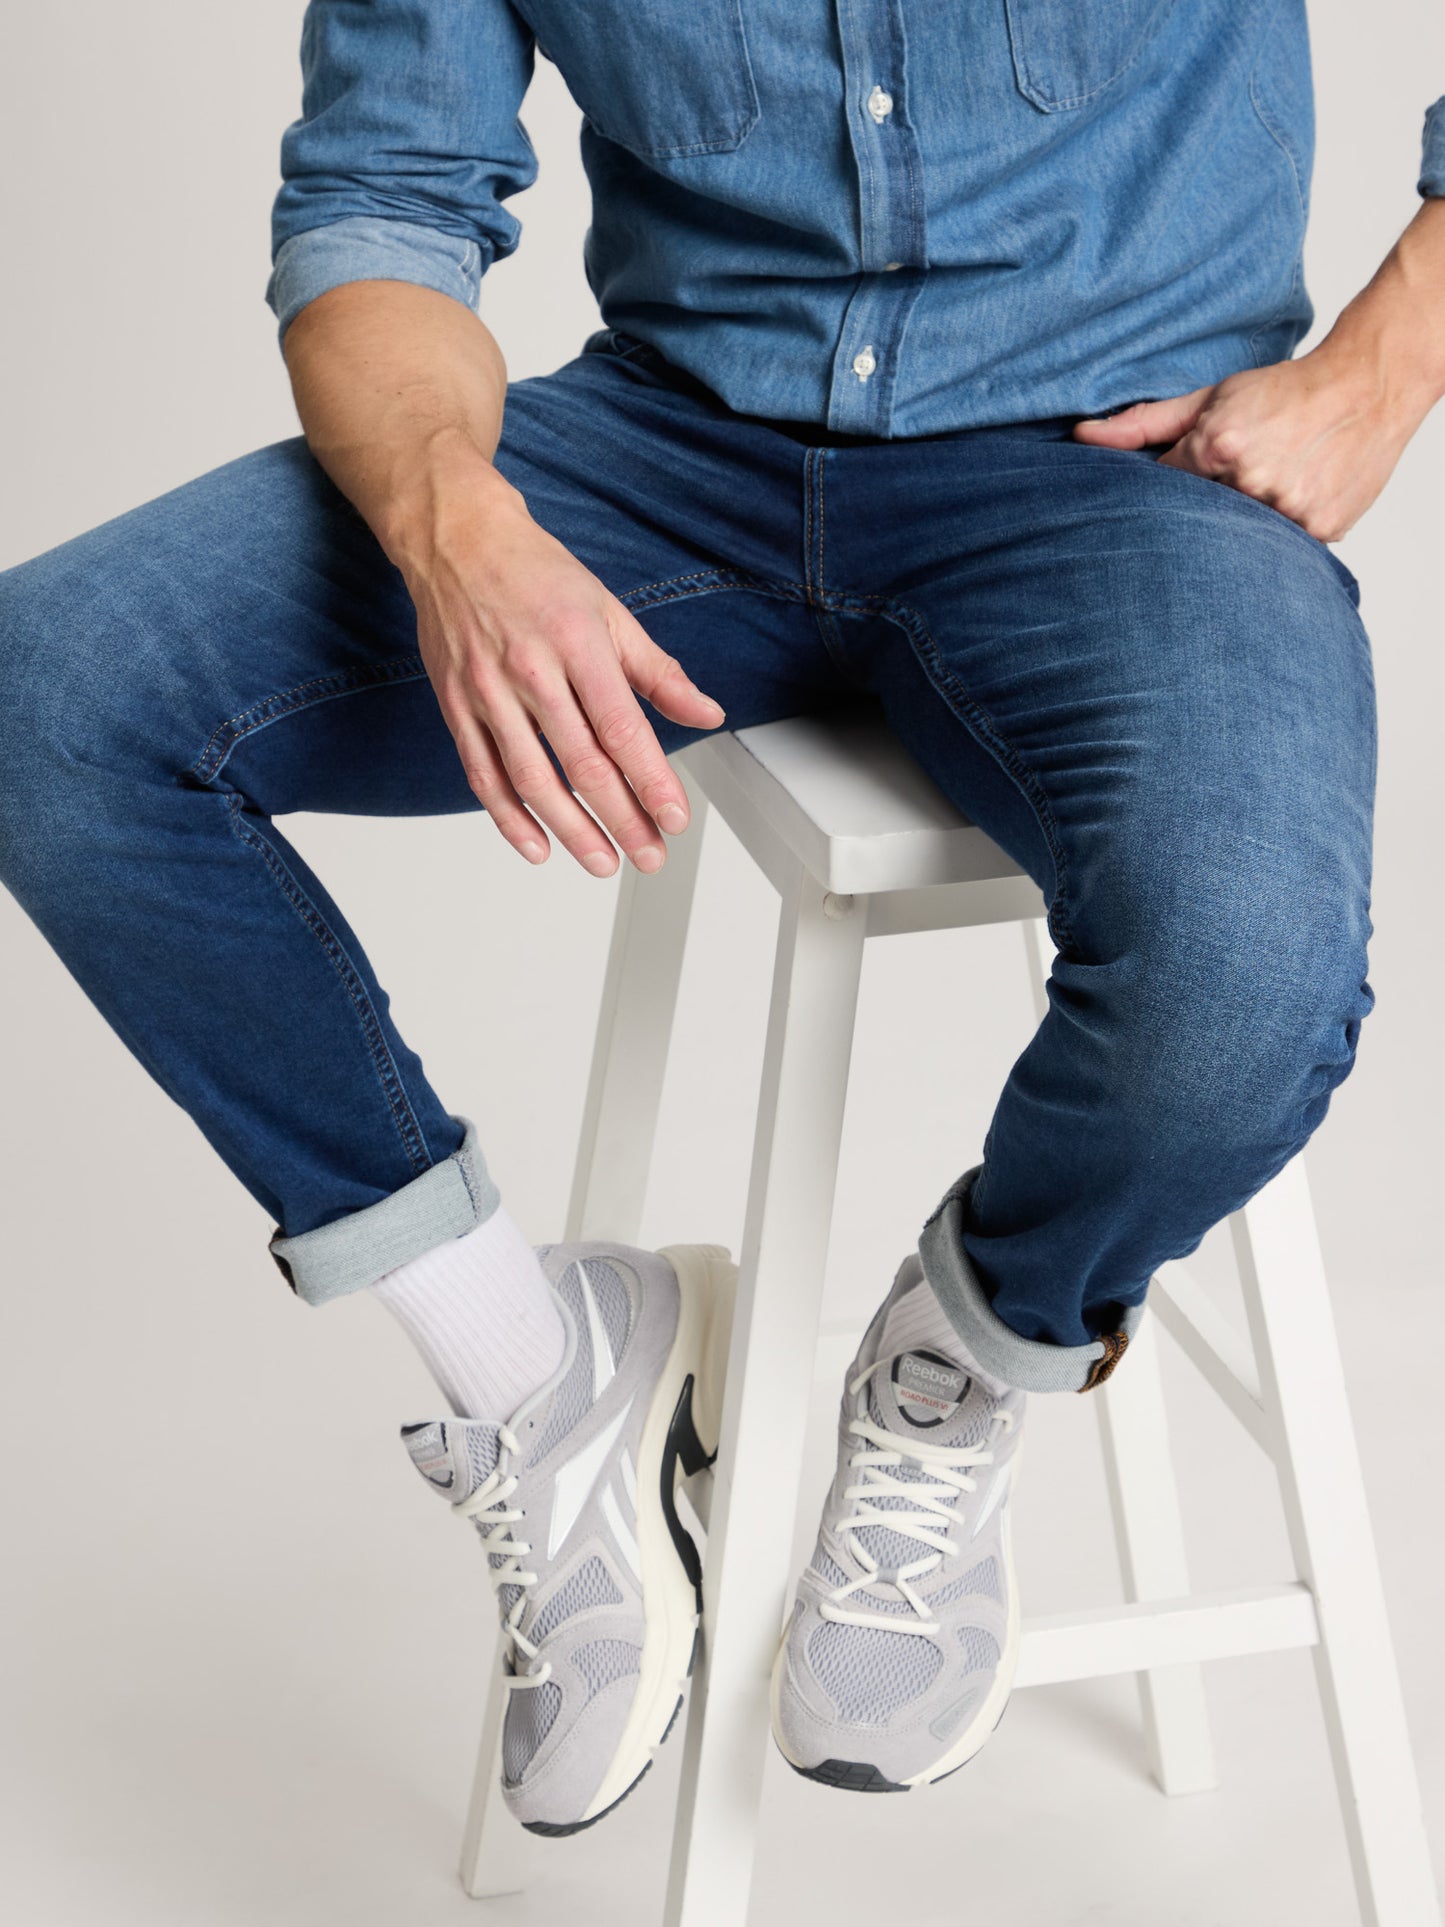 Jimi Herren Jeans Slim Fit Regular Waist Tapered Leg blau